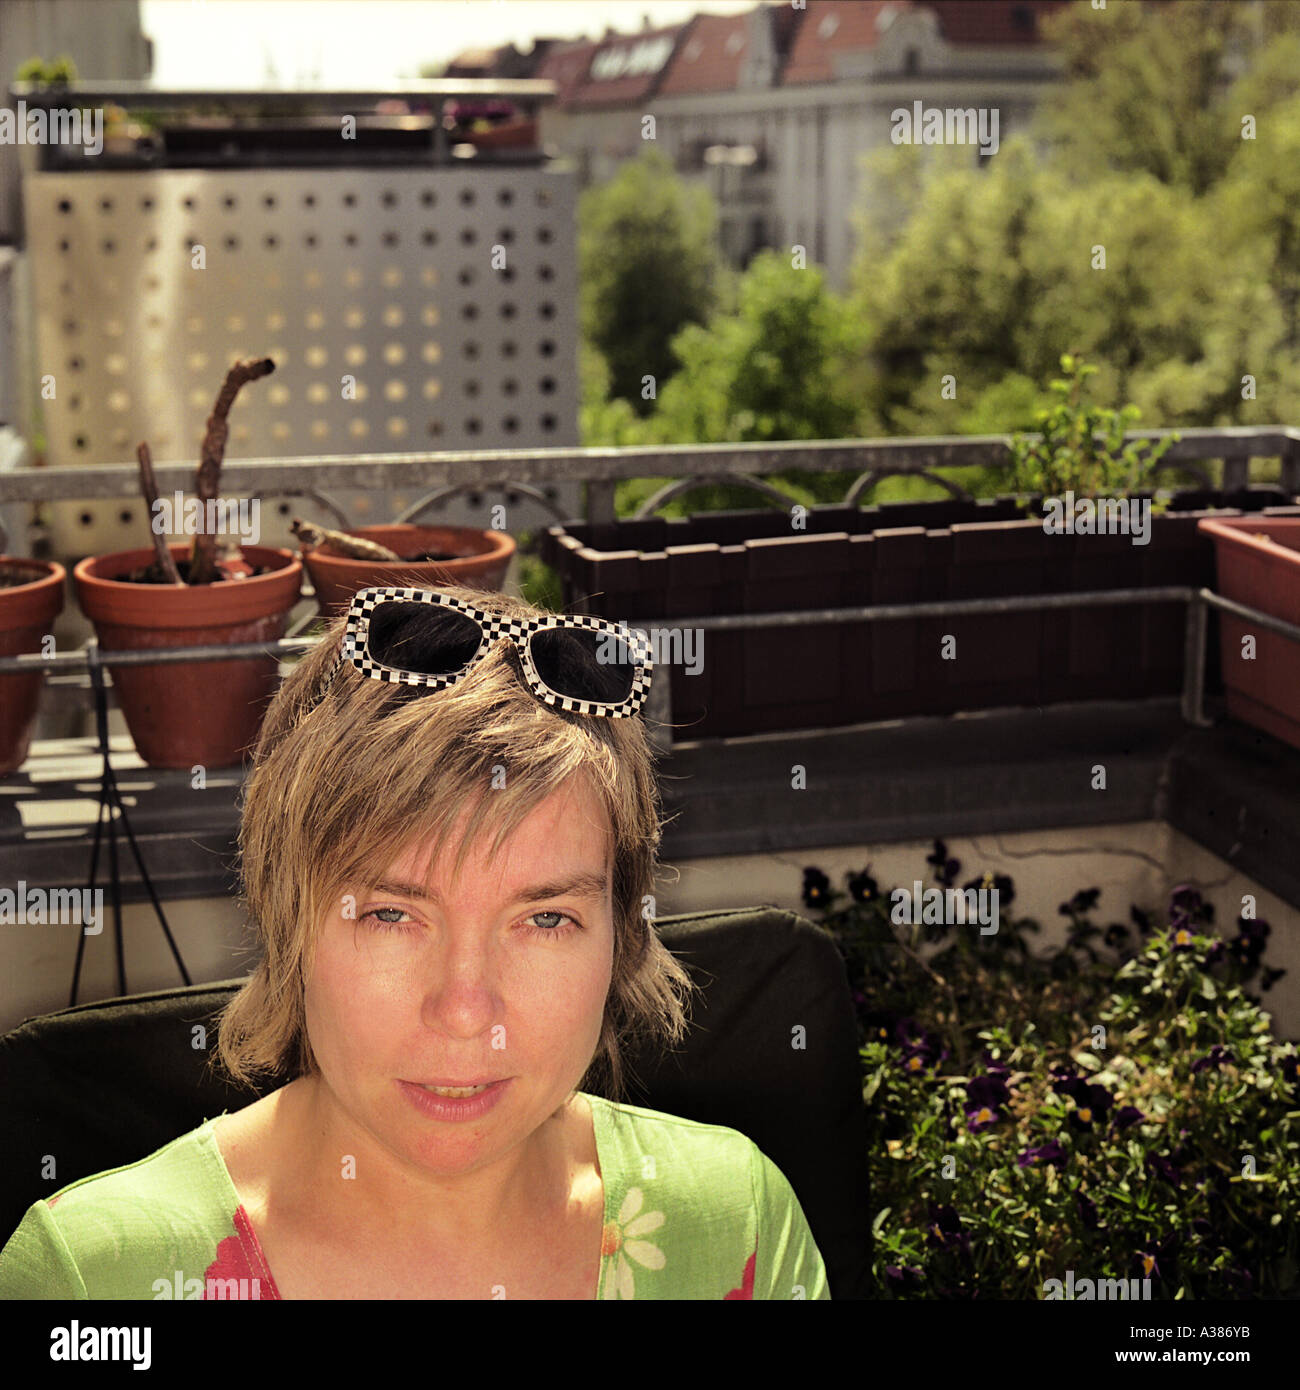 Danuta Schmidt on her balcony Stock Photo